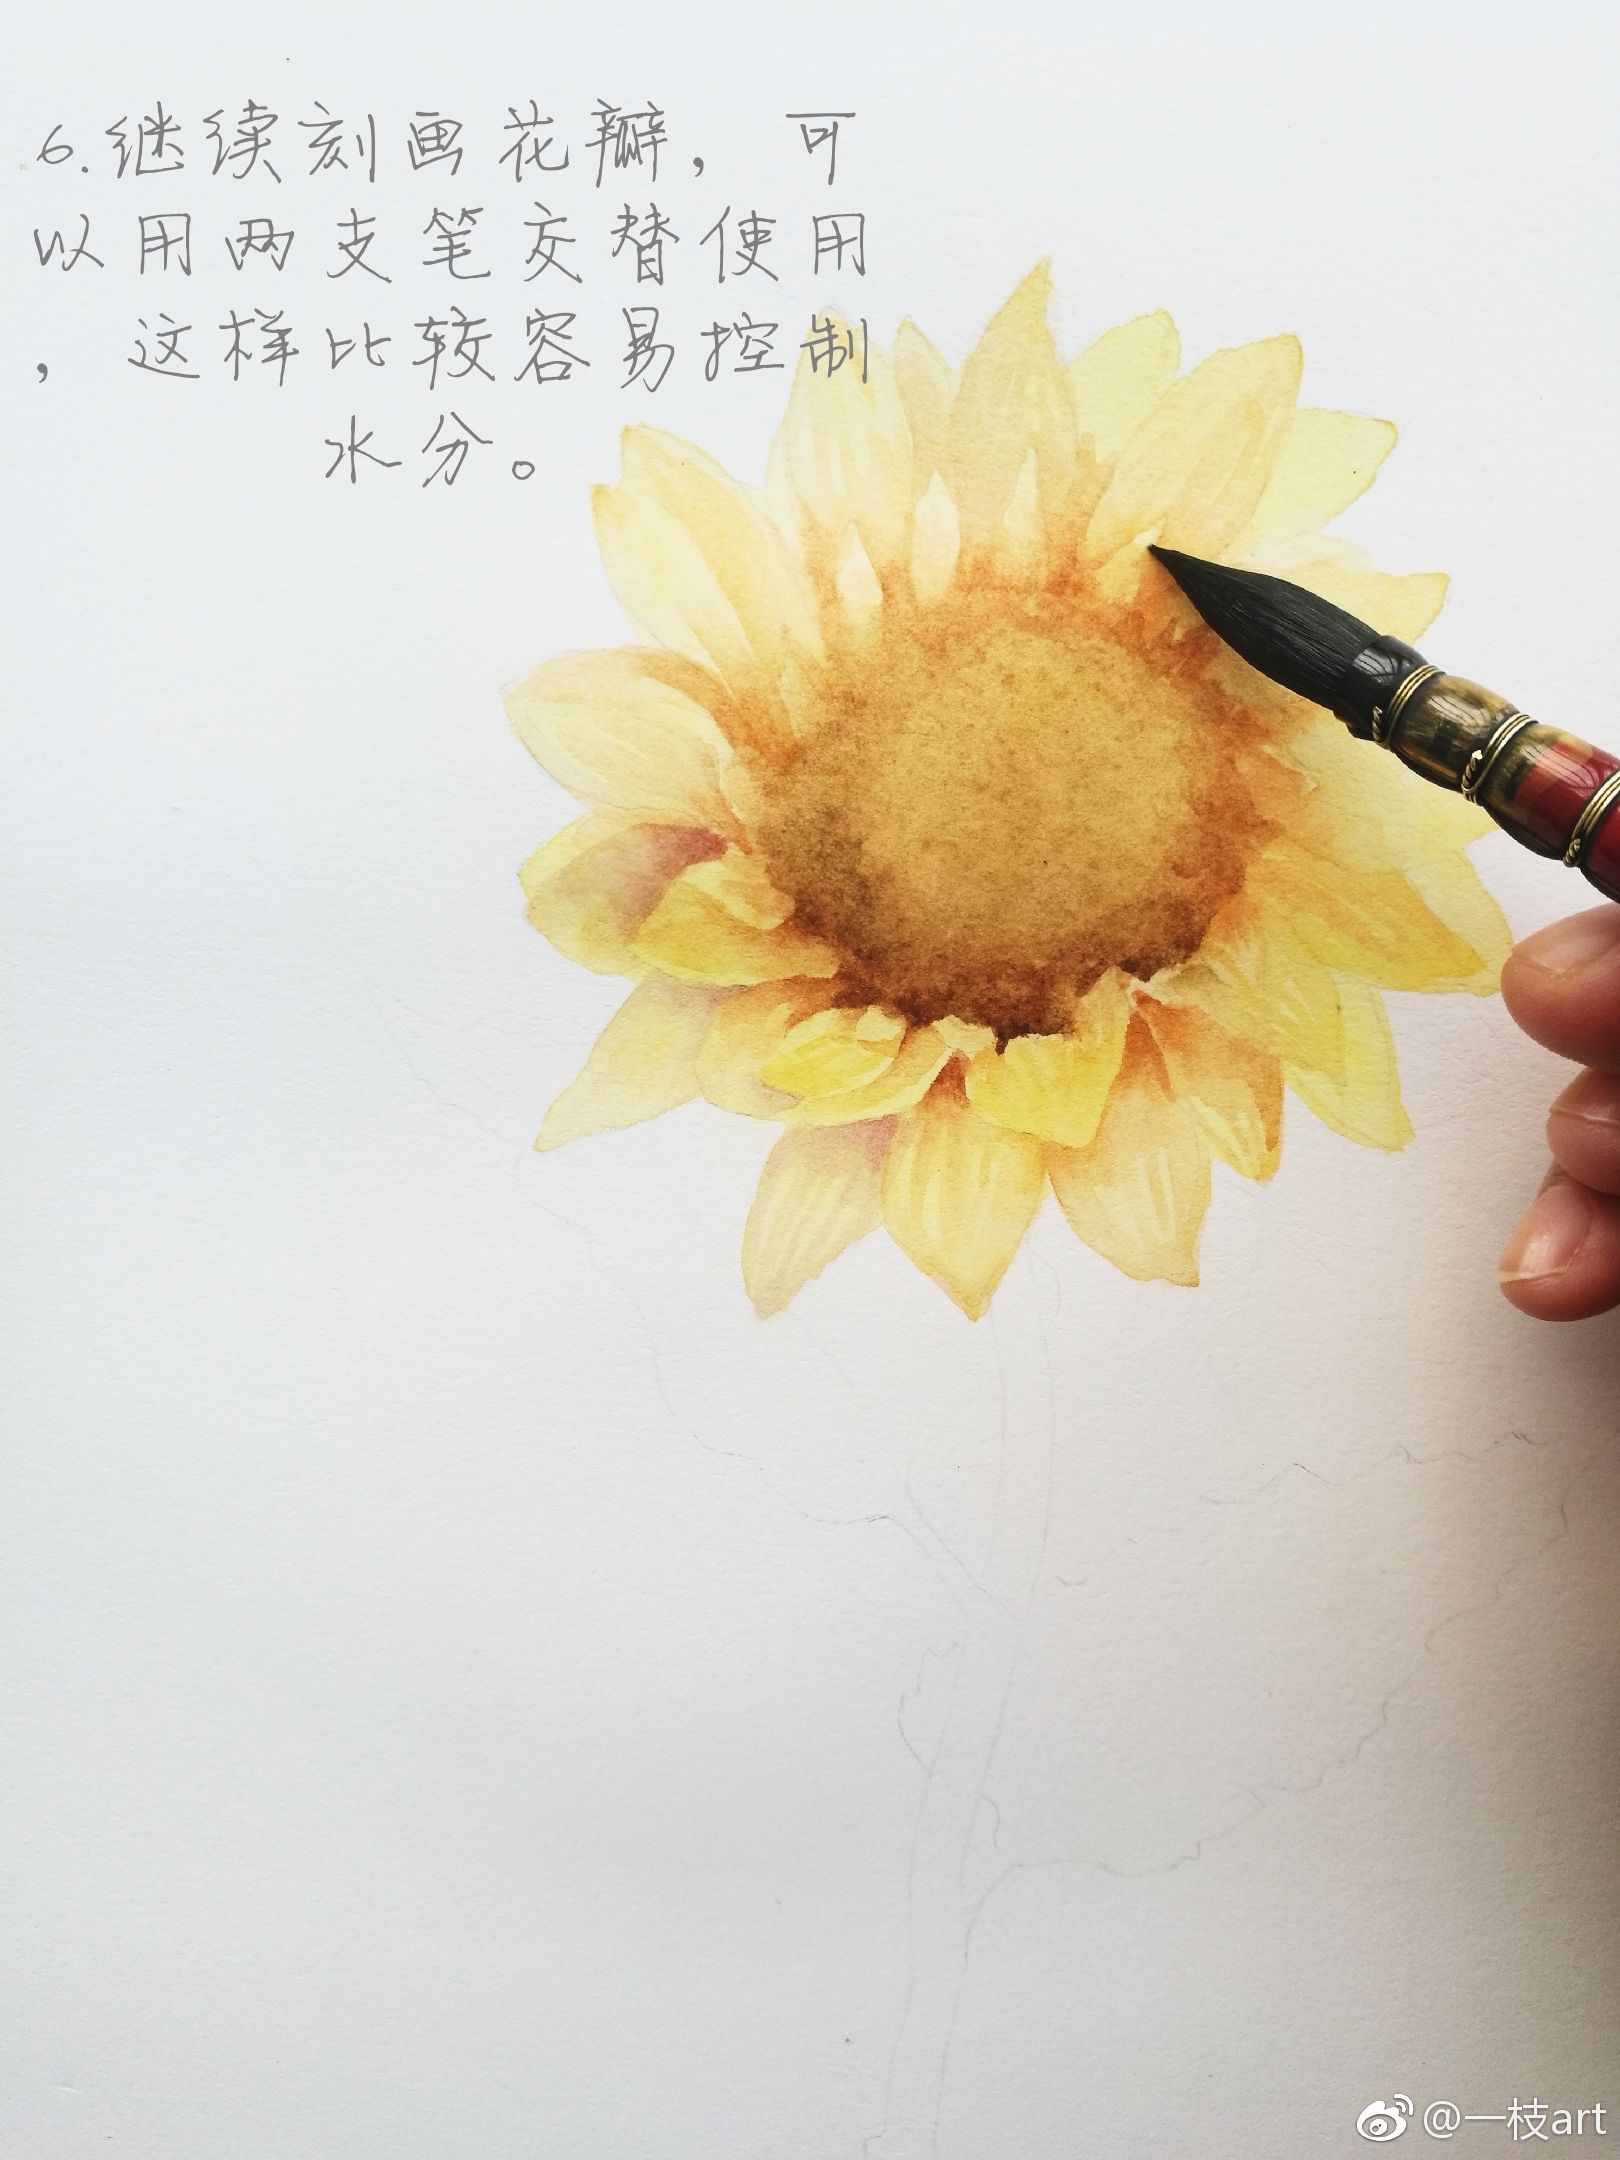 分享一朵向日葵的过程图 